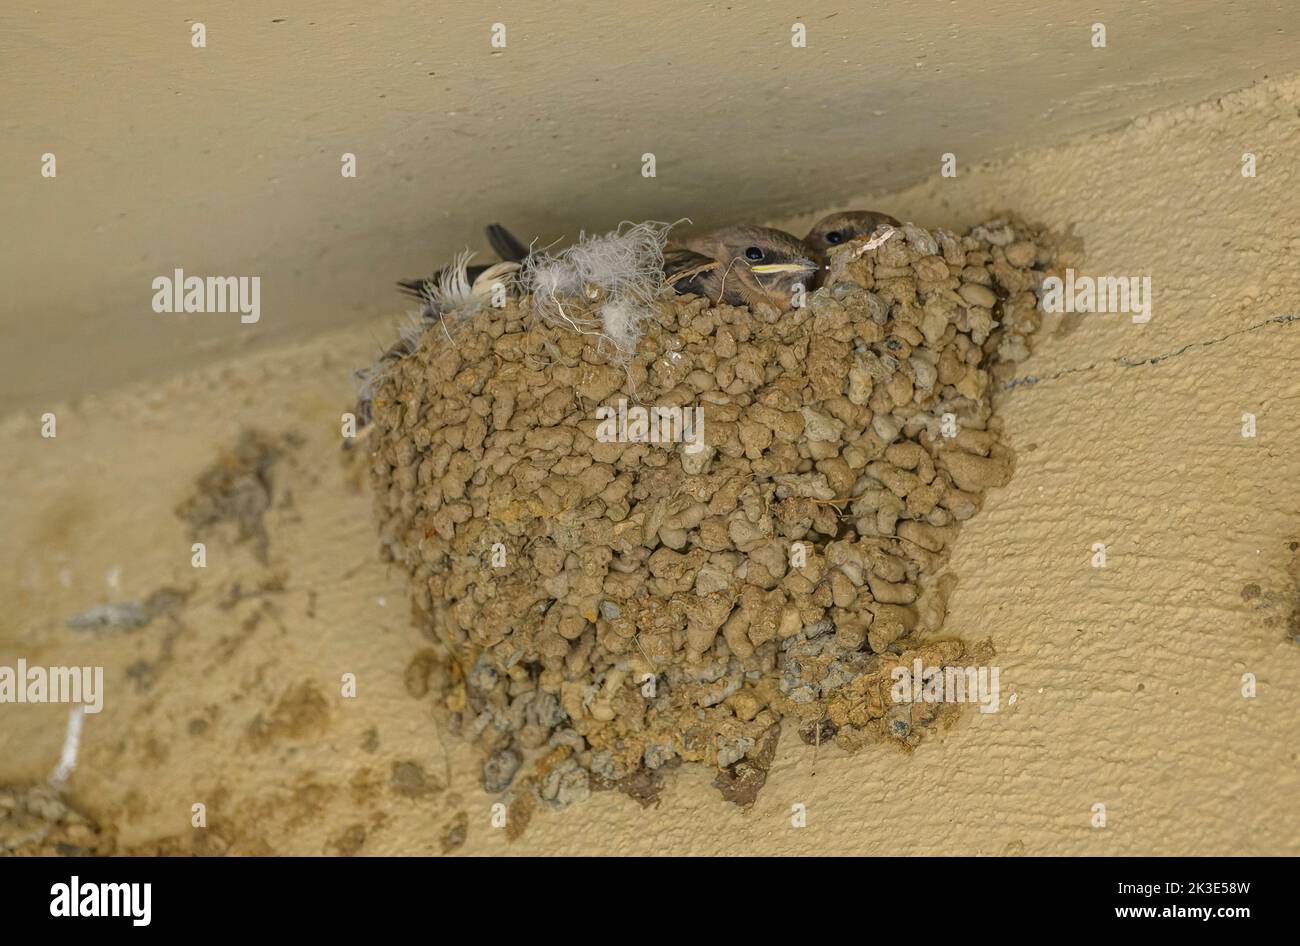 Crag Martin, Ptyonoprogne rupestris, jeune dans le nid, Pyrénées. Banque D'Images